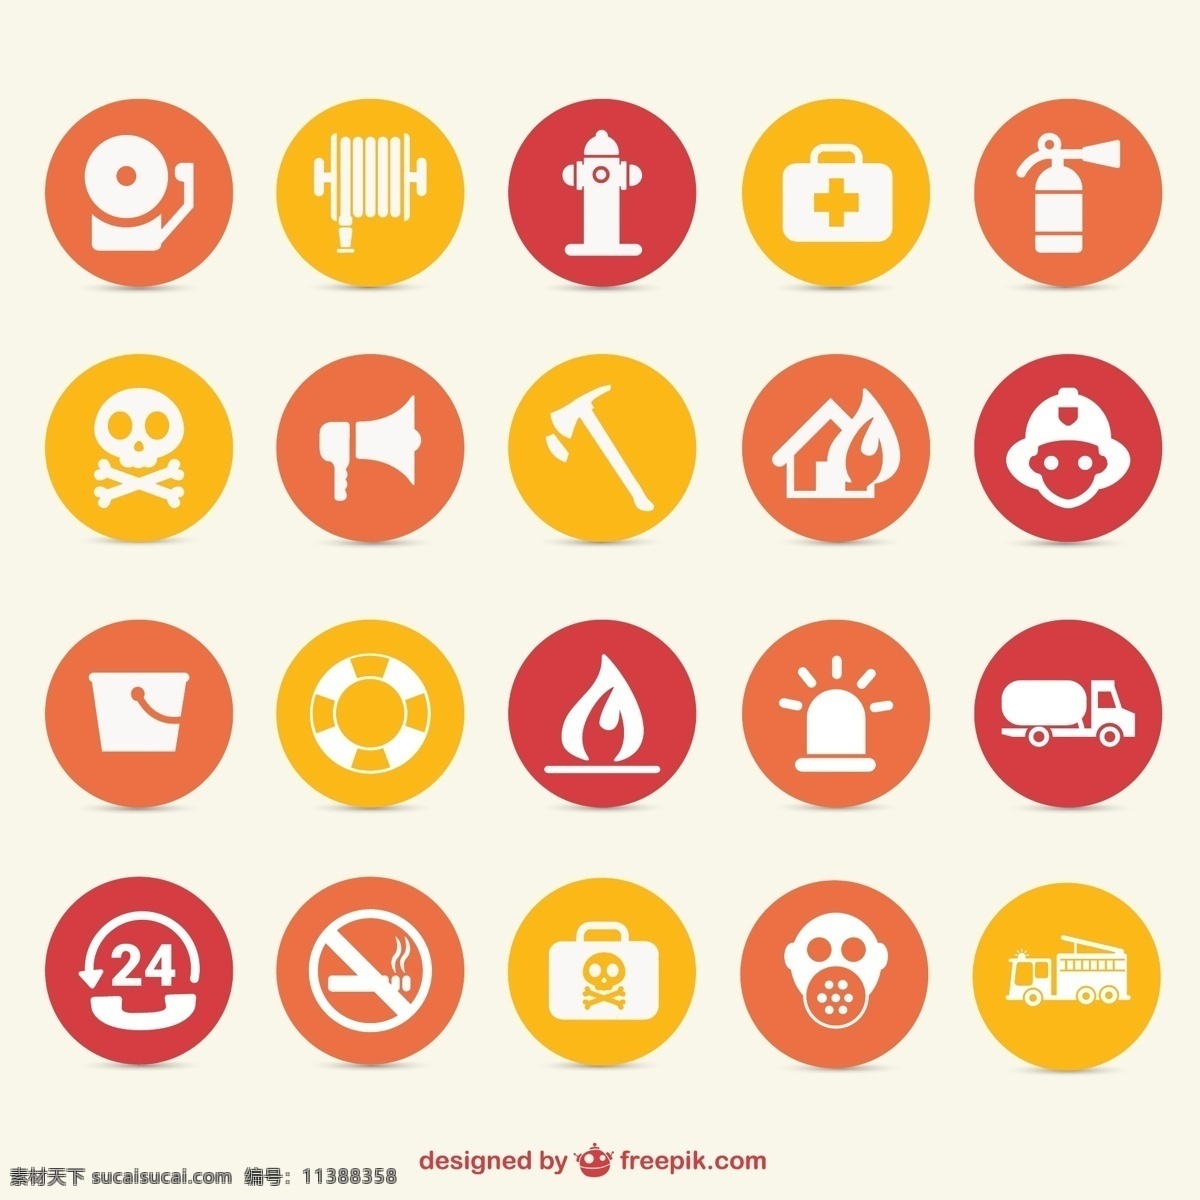 火灾 危险 图标 集 水 消防 医疗 图形 安全 标志 图形设计 火焰 帮助 元素 设计元素 符号 消防员 图标集 白色